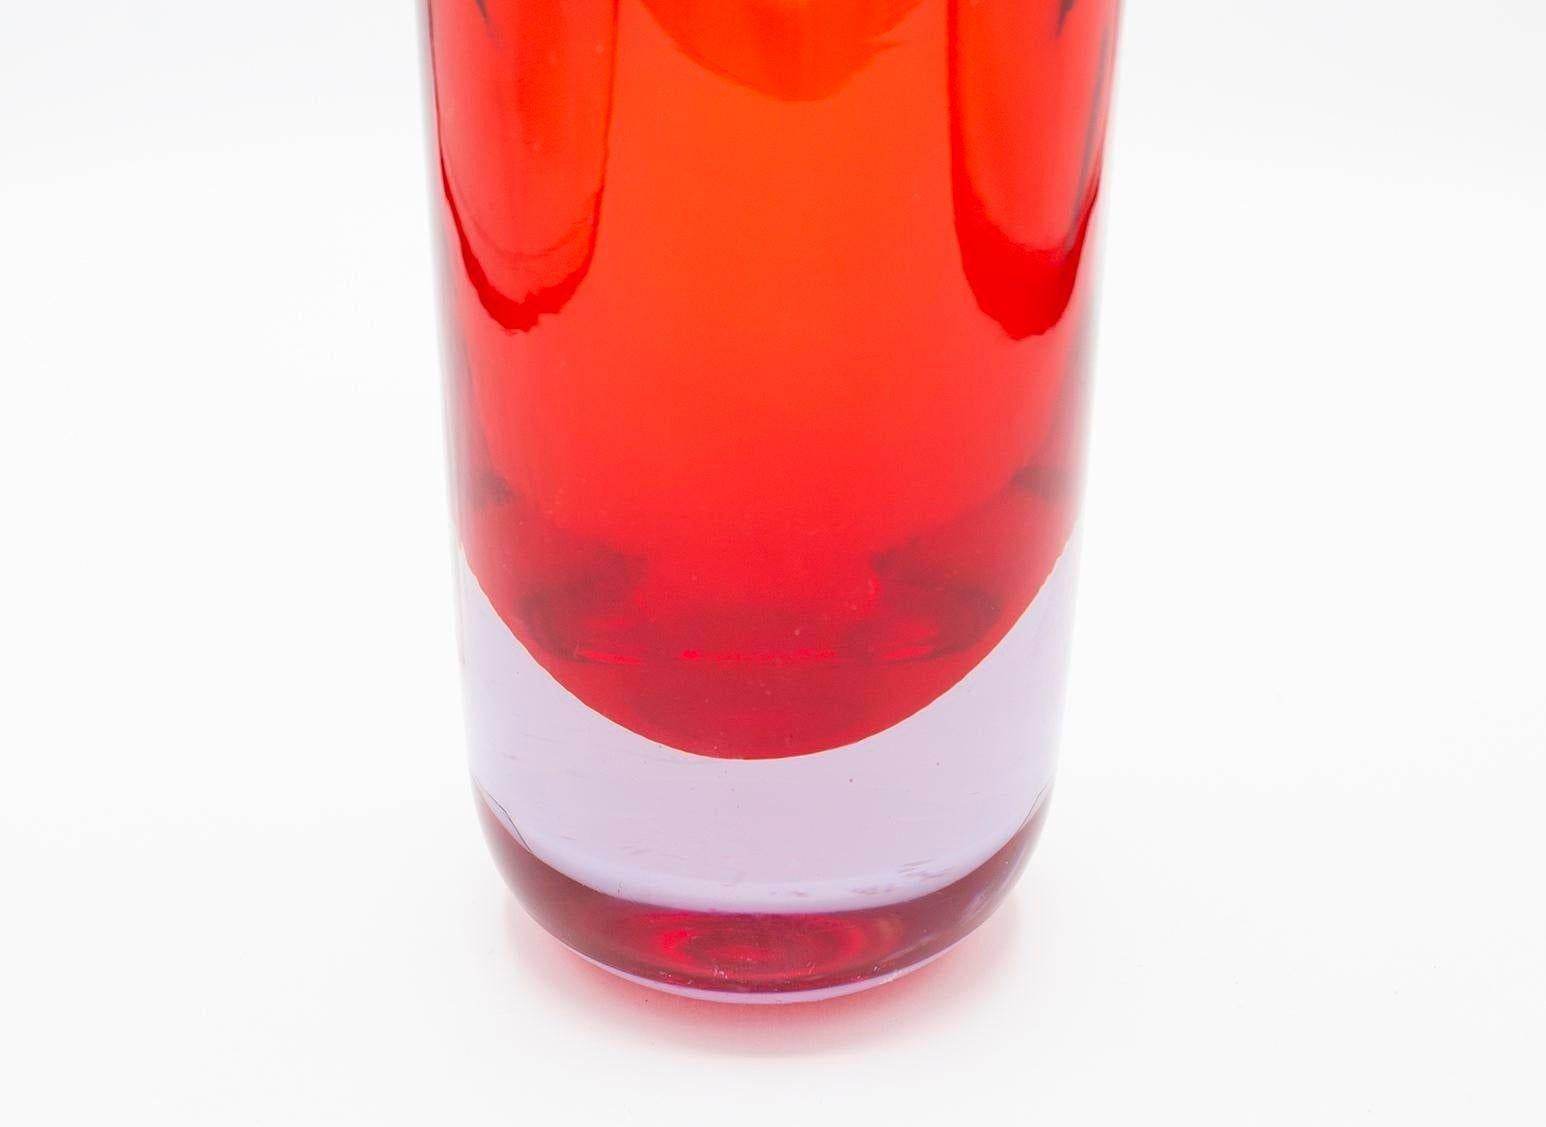 Italien, wahrscheinlich 1960er Jahre
Dies ist eine schöne Vase aus Muranoglas im Sommerso-Stil, die Seguso zugeschrieben wird. Gewichtig und substanziell in der Haptik, schwerer Sockel, reflektiert das Licht schön. Rote Farbe. Ein schönes und großes